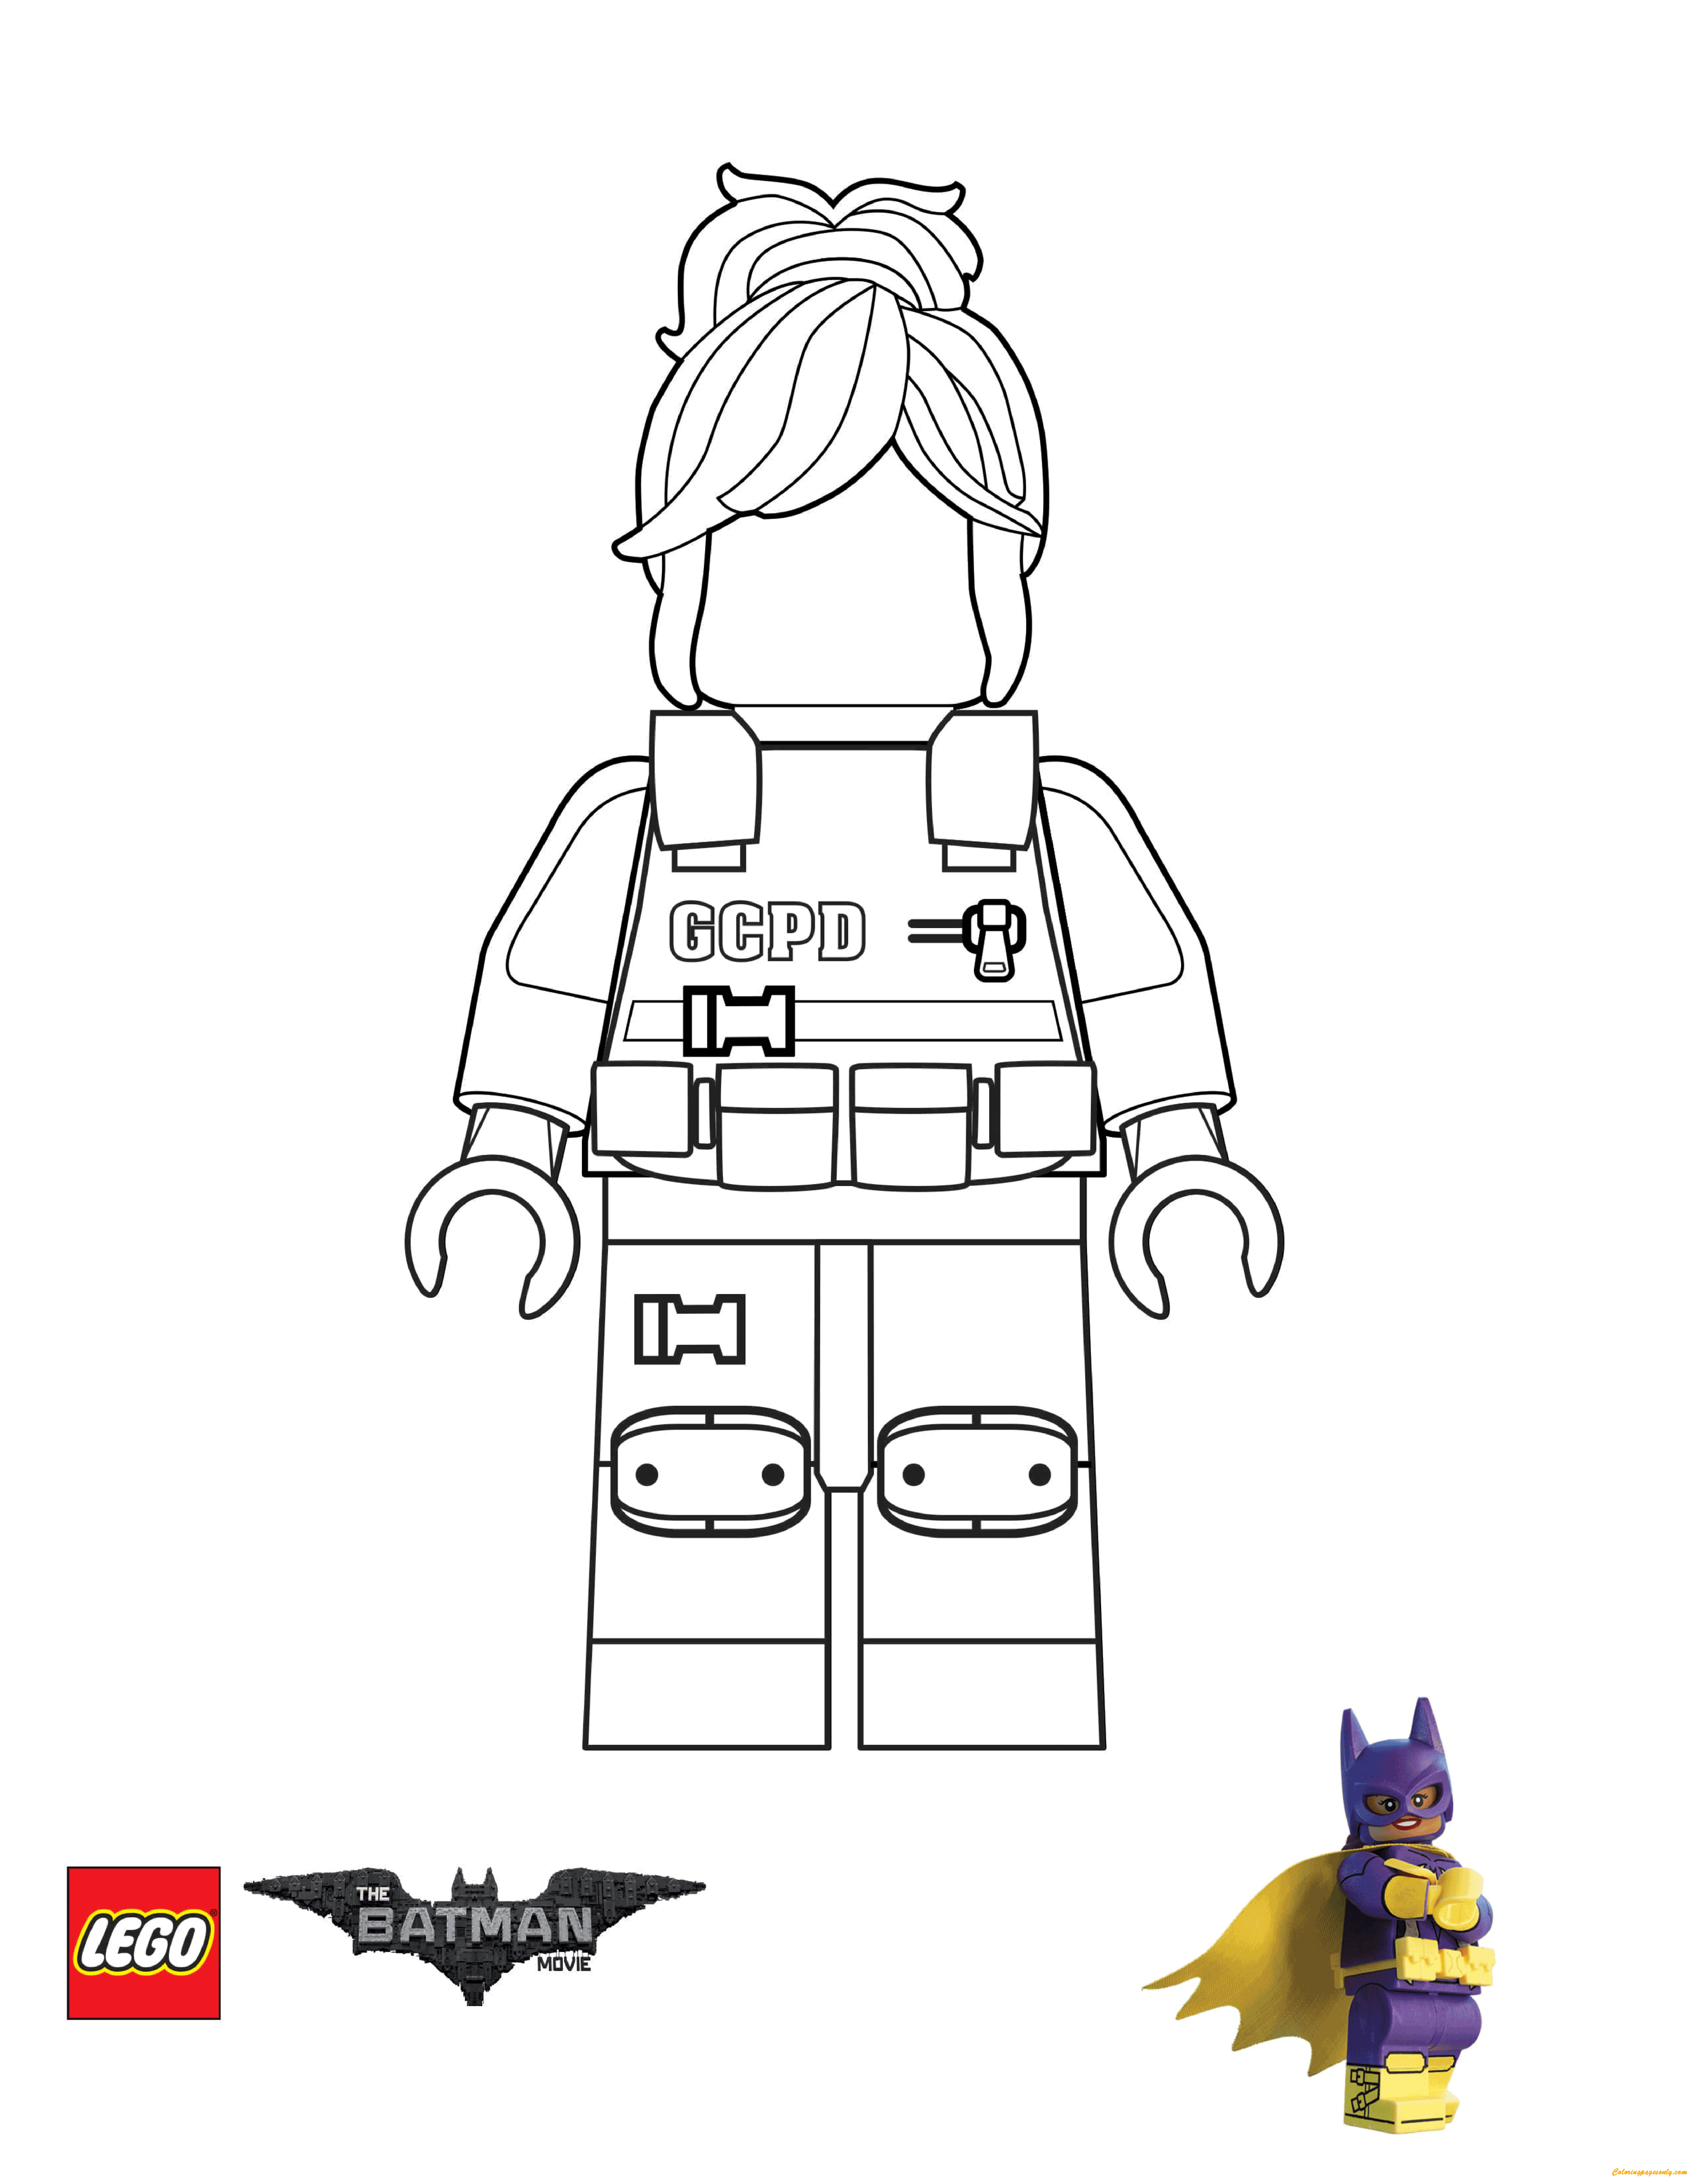 GCPD Barbara Gordon Lego Batman Movie Coloring Page